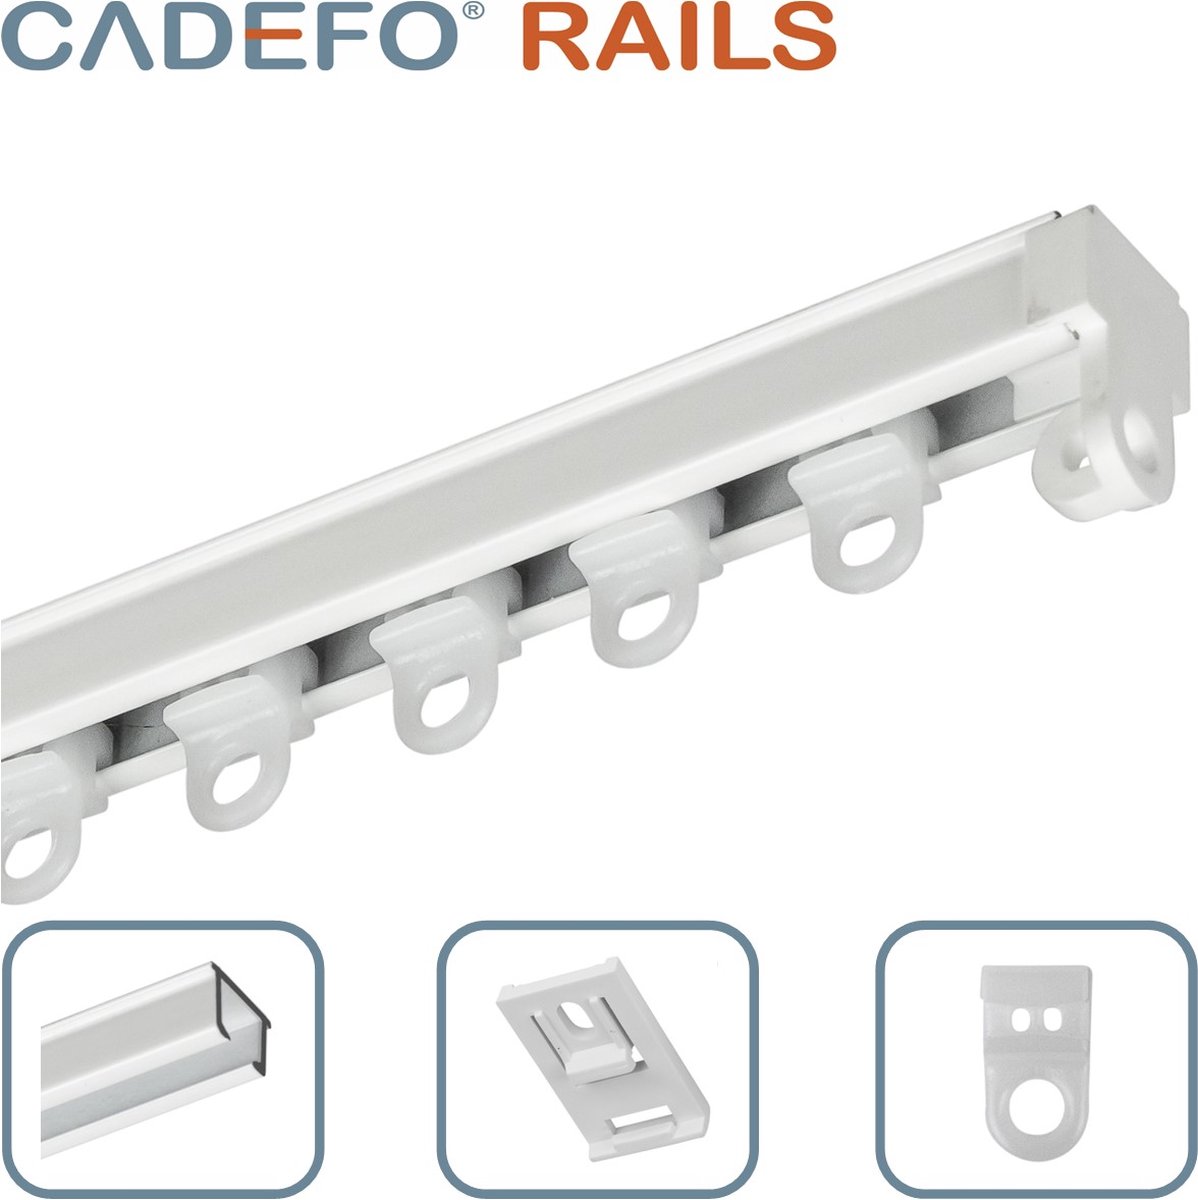 CADEFO RAILS (101 - 150 cm) Gordijnrails - Compleet op maat! - UIT 1 STUK - Leverbaar tot 6 meter - Plafondbevestiging - Lengte 116 cm